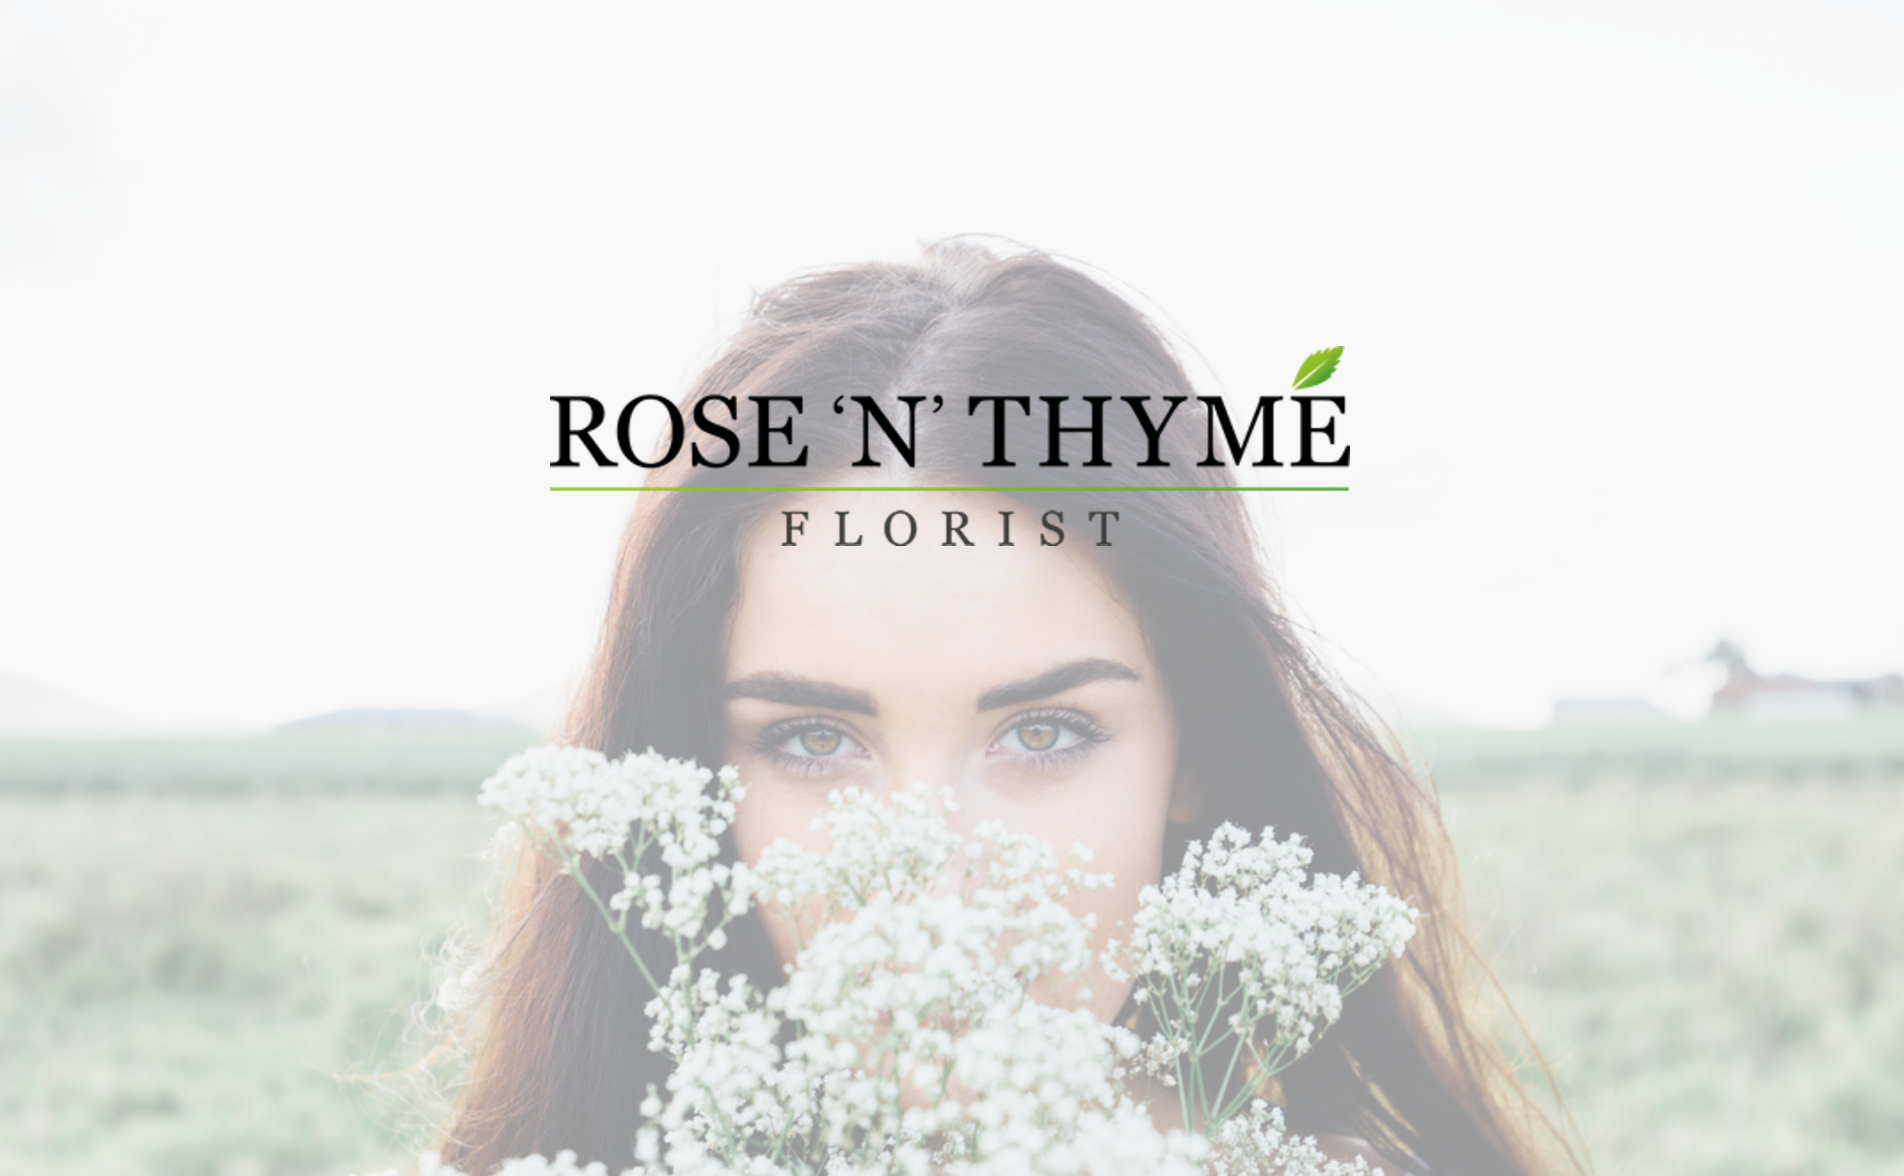 Florist Rose n' Thyme